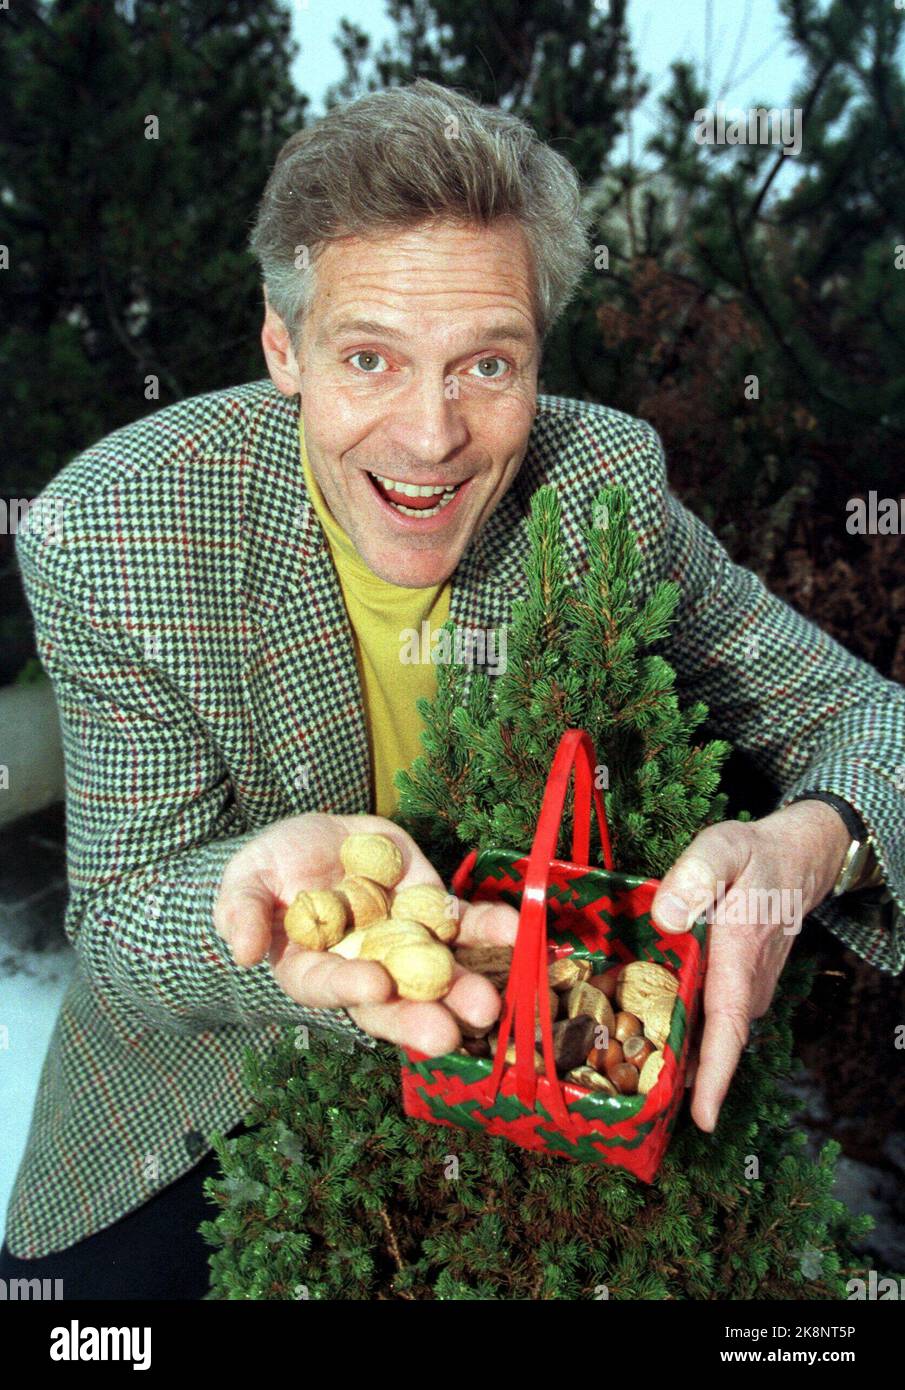 Roald Øyen, der mit Start am Weihnachtstag auch für seine "Weihnachtsnüsse" in NRK bereit ist, verspricht in diesem Jahr schwierigere Aufgaben. Scanfoto: Erik Johansen / NTB Stockfoto